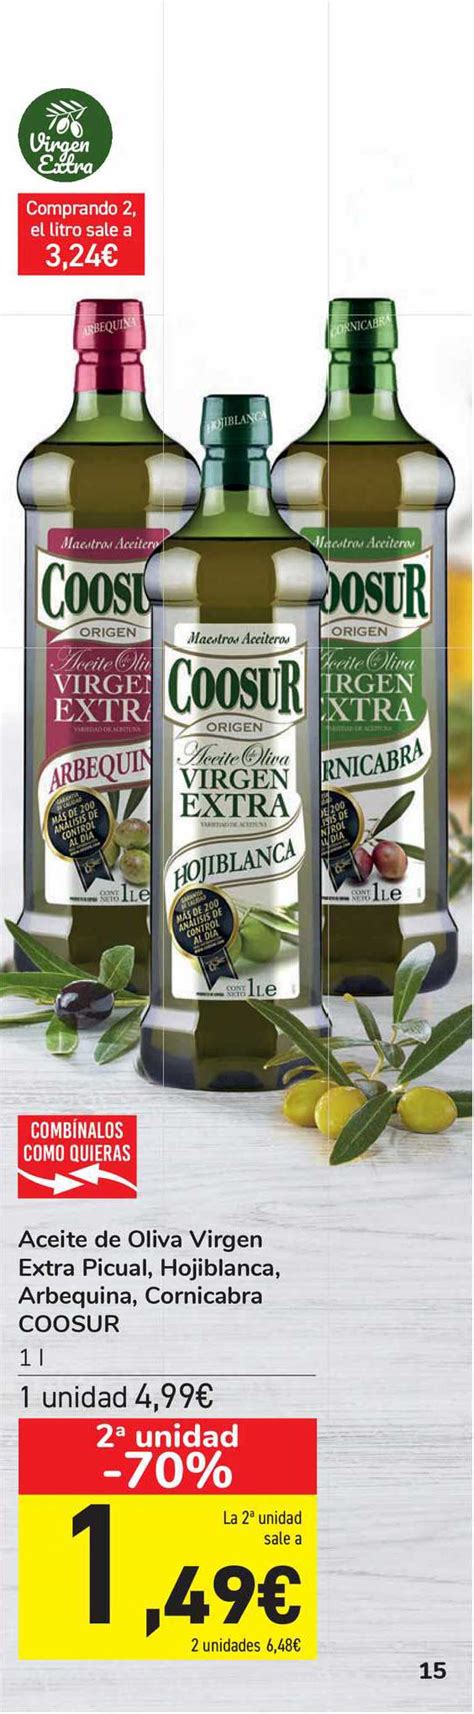 oferta 2ª unidad 70 aceite de oliva virgen extra picual hojiblanca